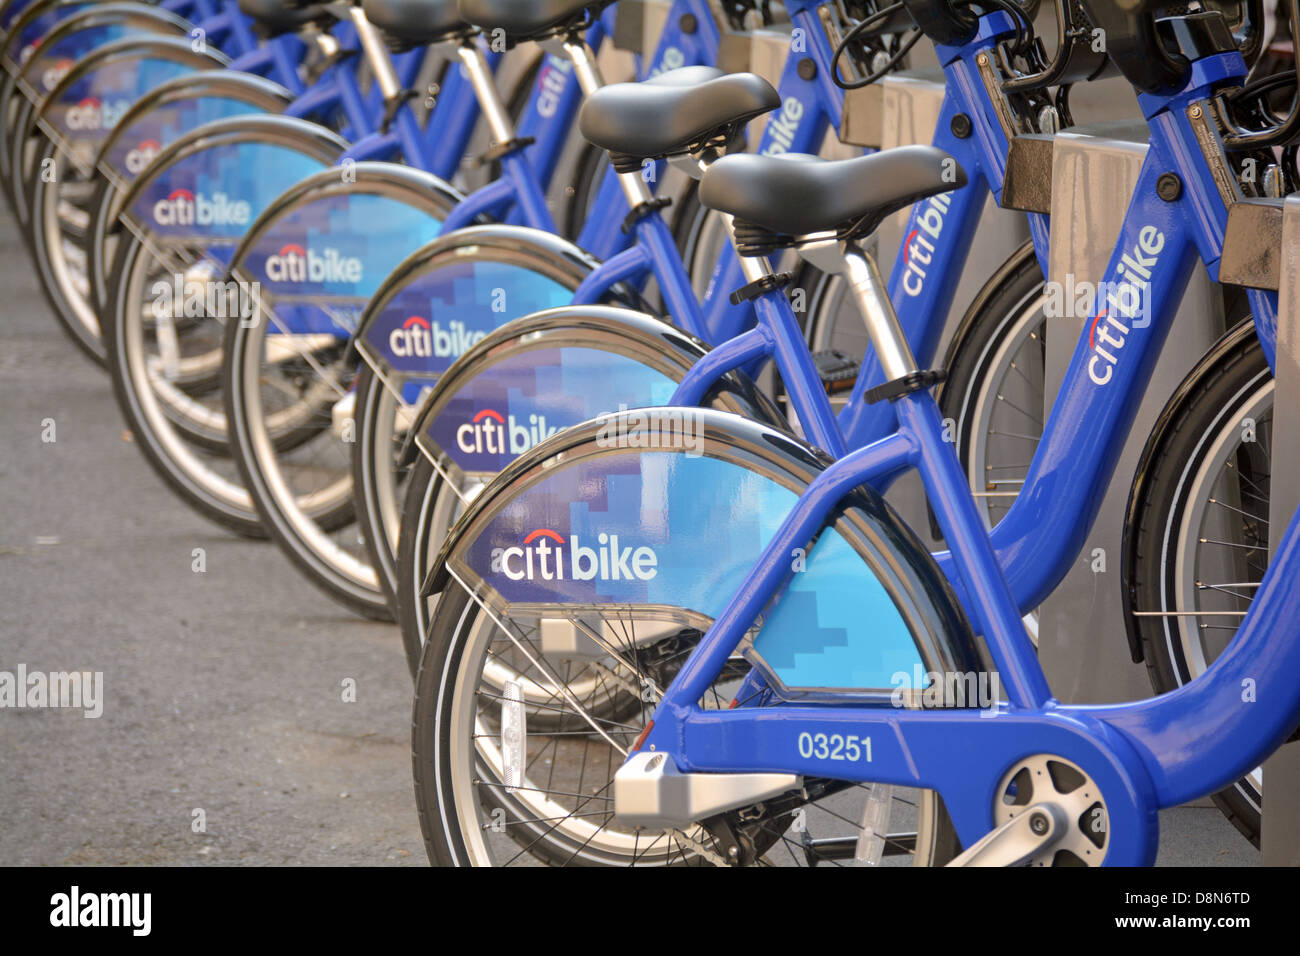 L'une des 330 stations d'accueil pour la location de vélos Citi, New York City's programme de partage de vélos. Banque D'Images